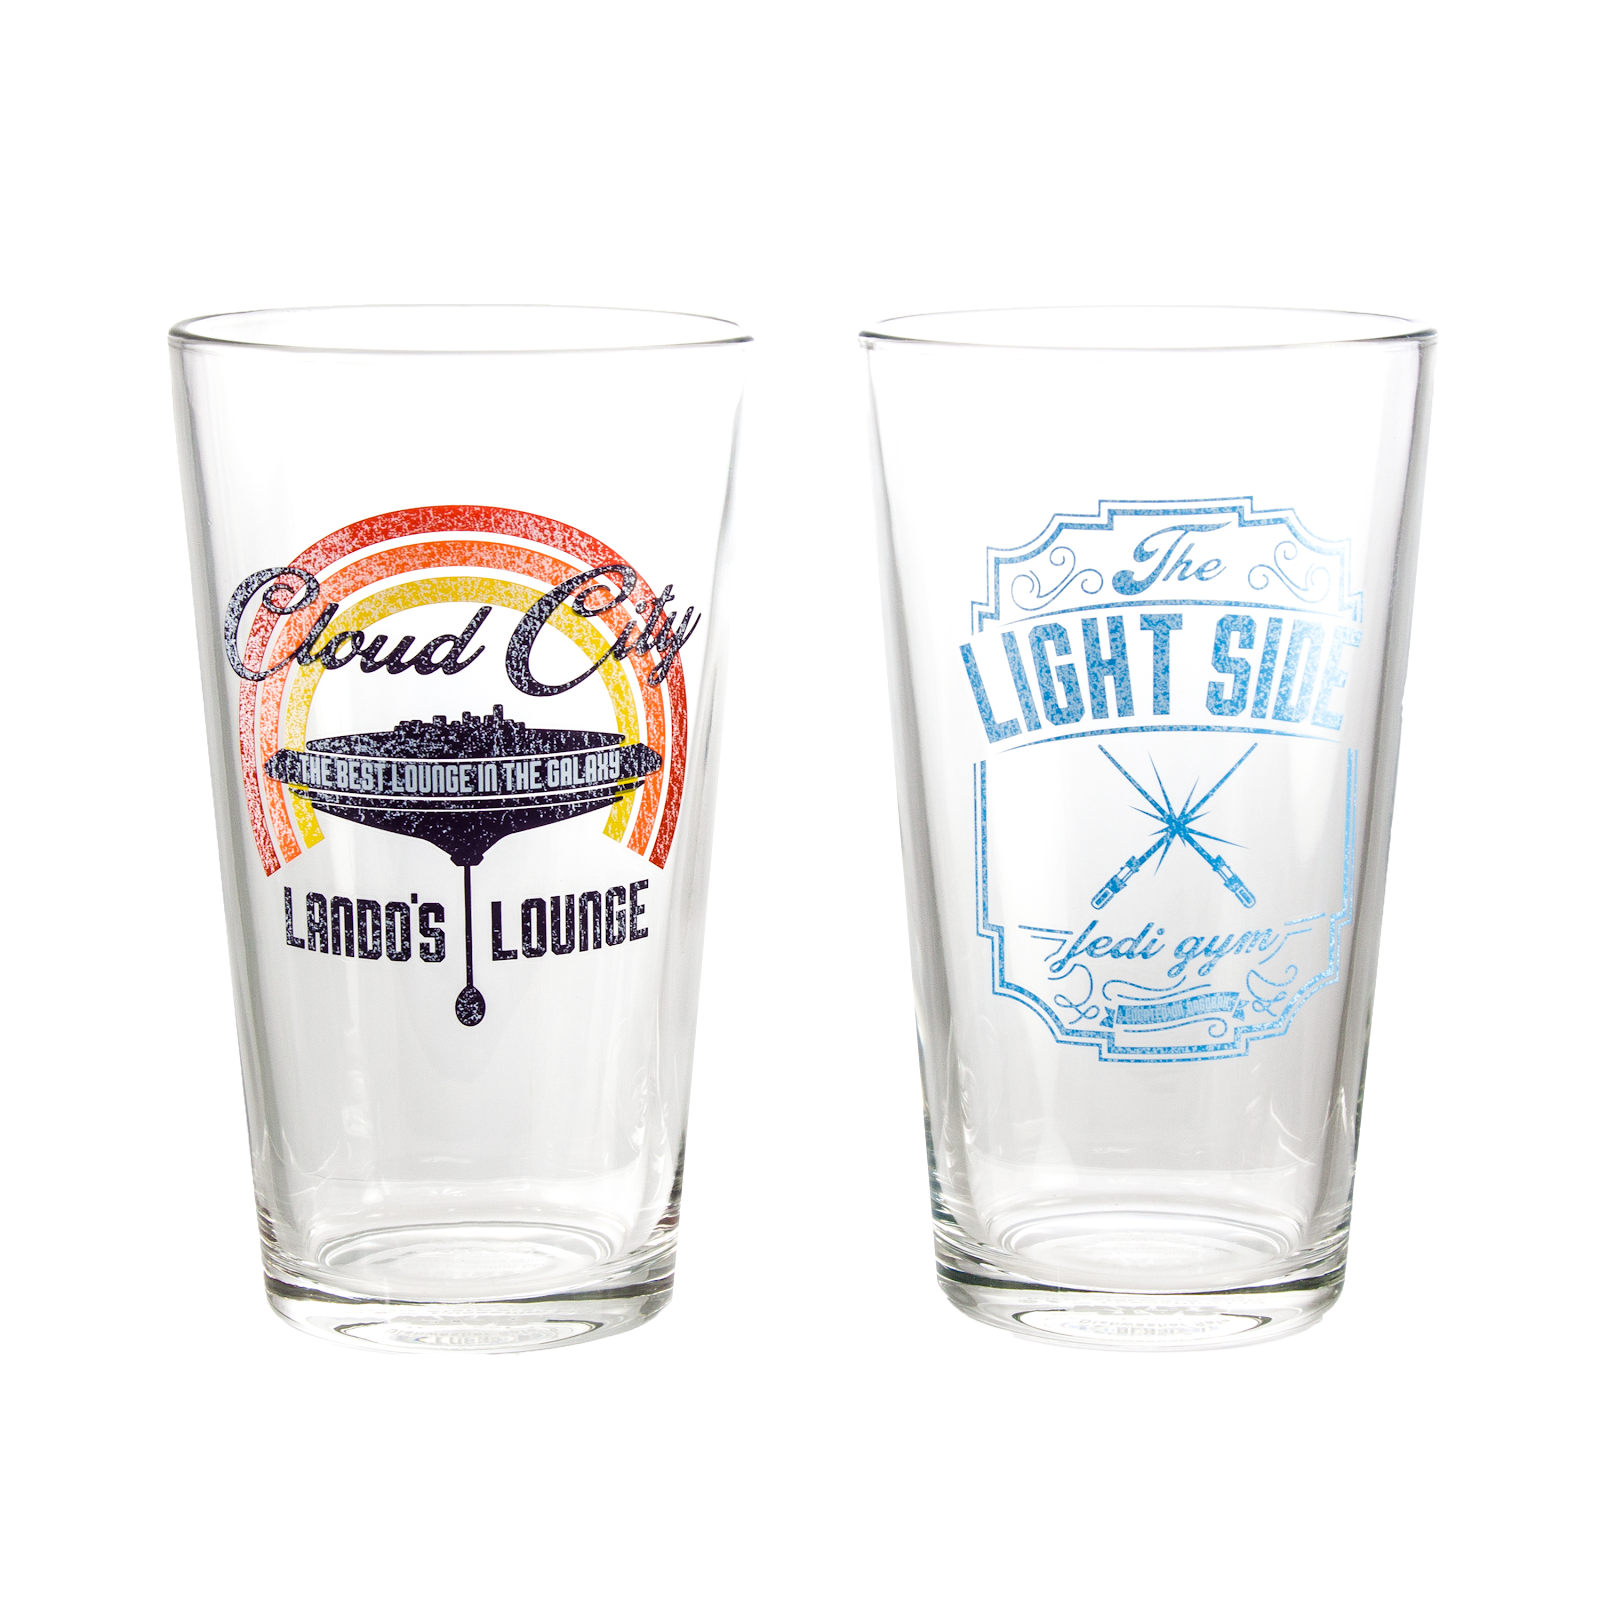 Star Wars Pint Glass Set  Lando's Lounge & Jedi Gym Pint Glasses